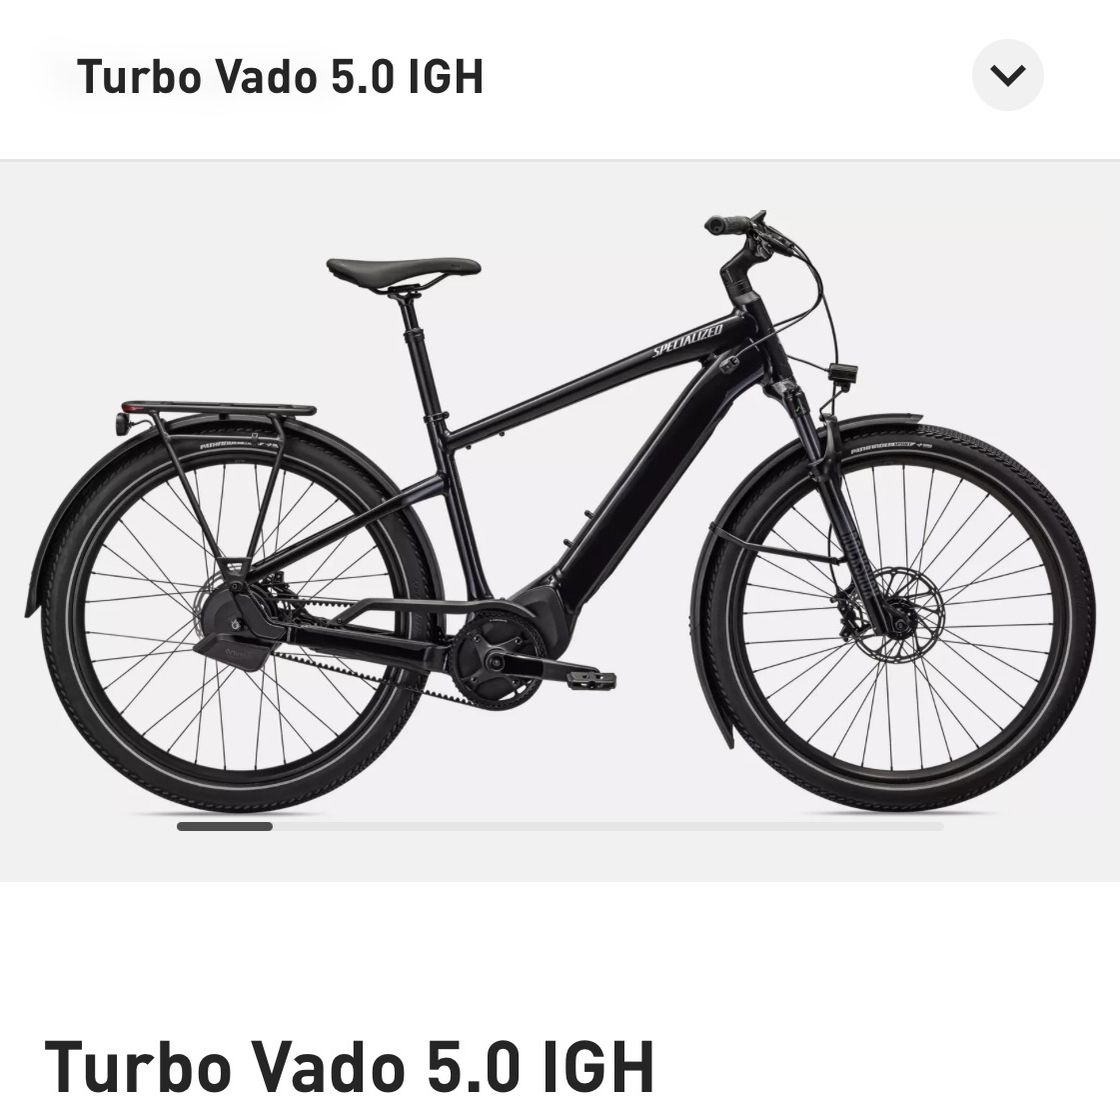 Specialized e bike vado 5.0 igh -$2,000 Off!